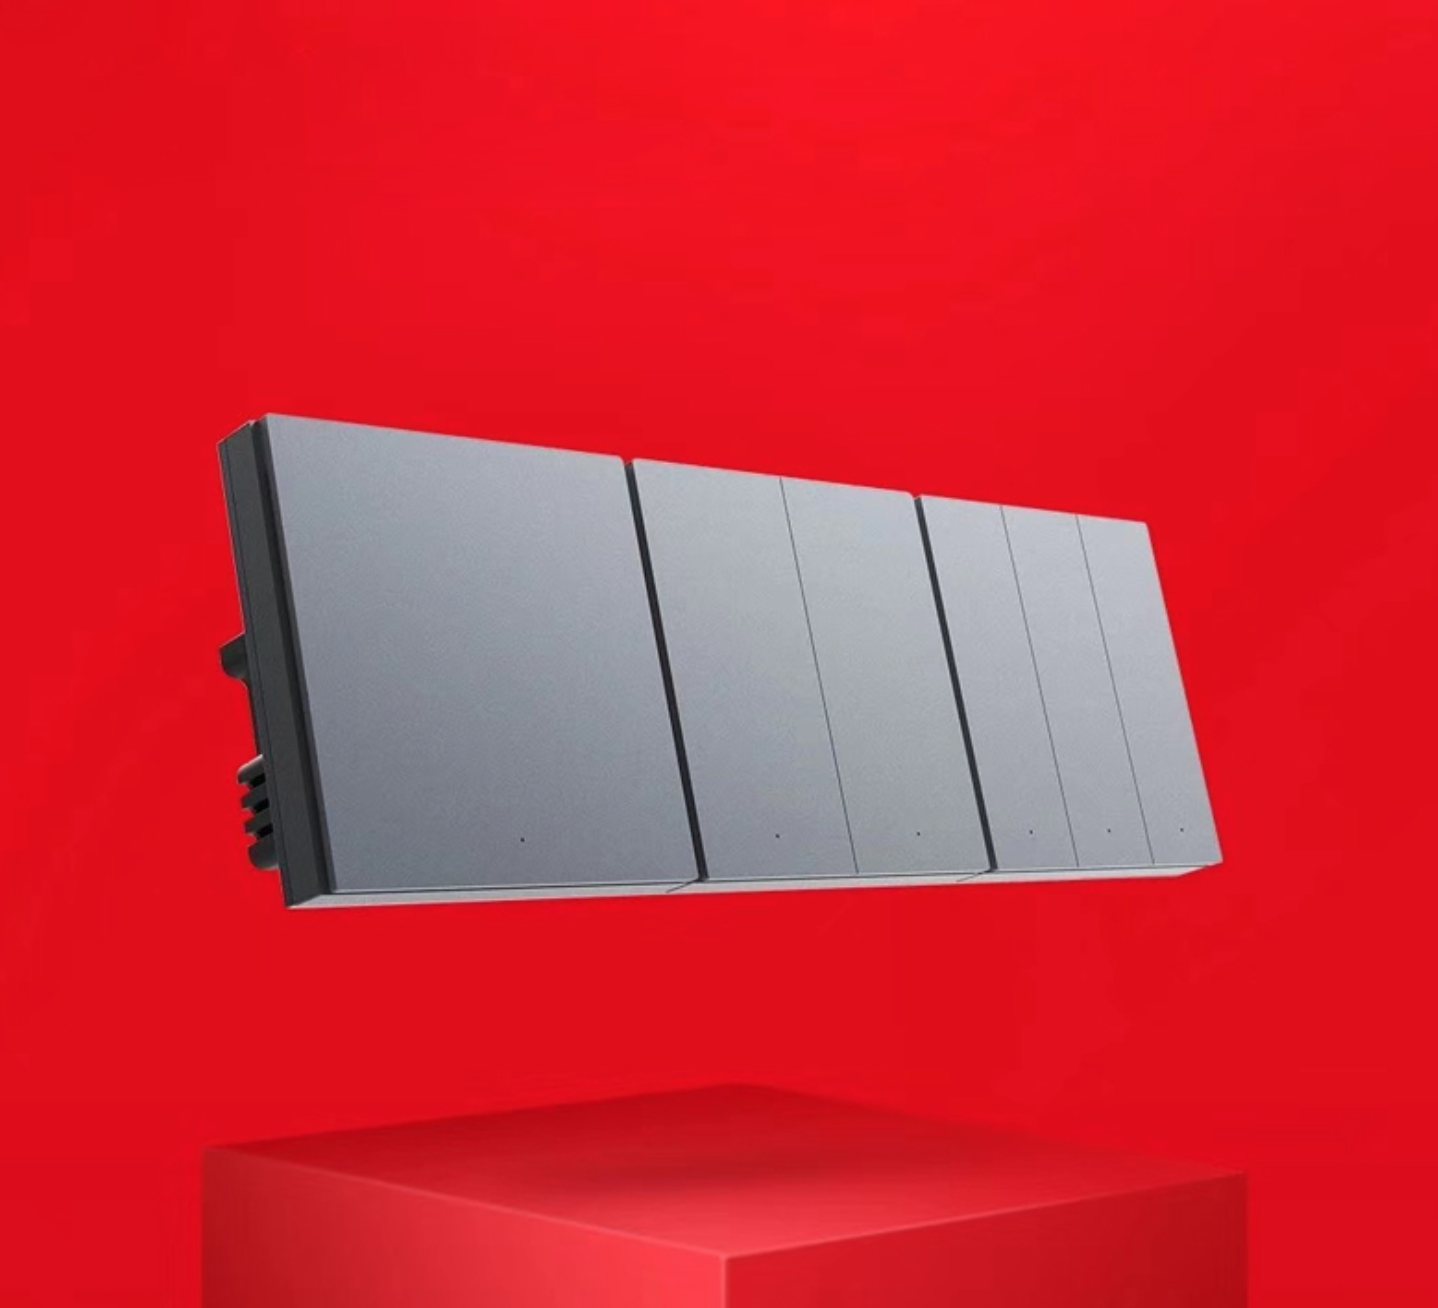 Xiaomi Aqara N200 Smart doorlock price